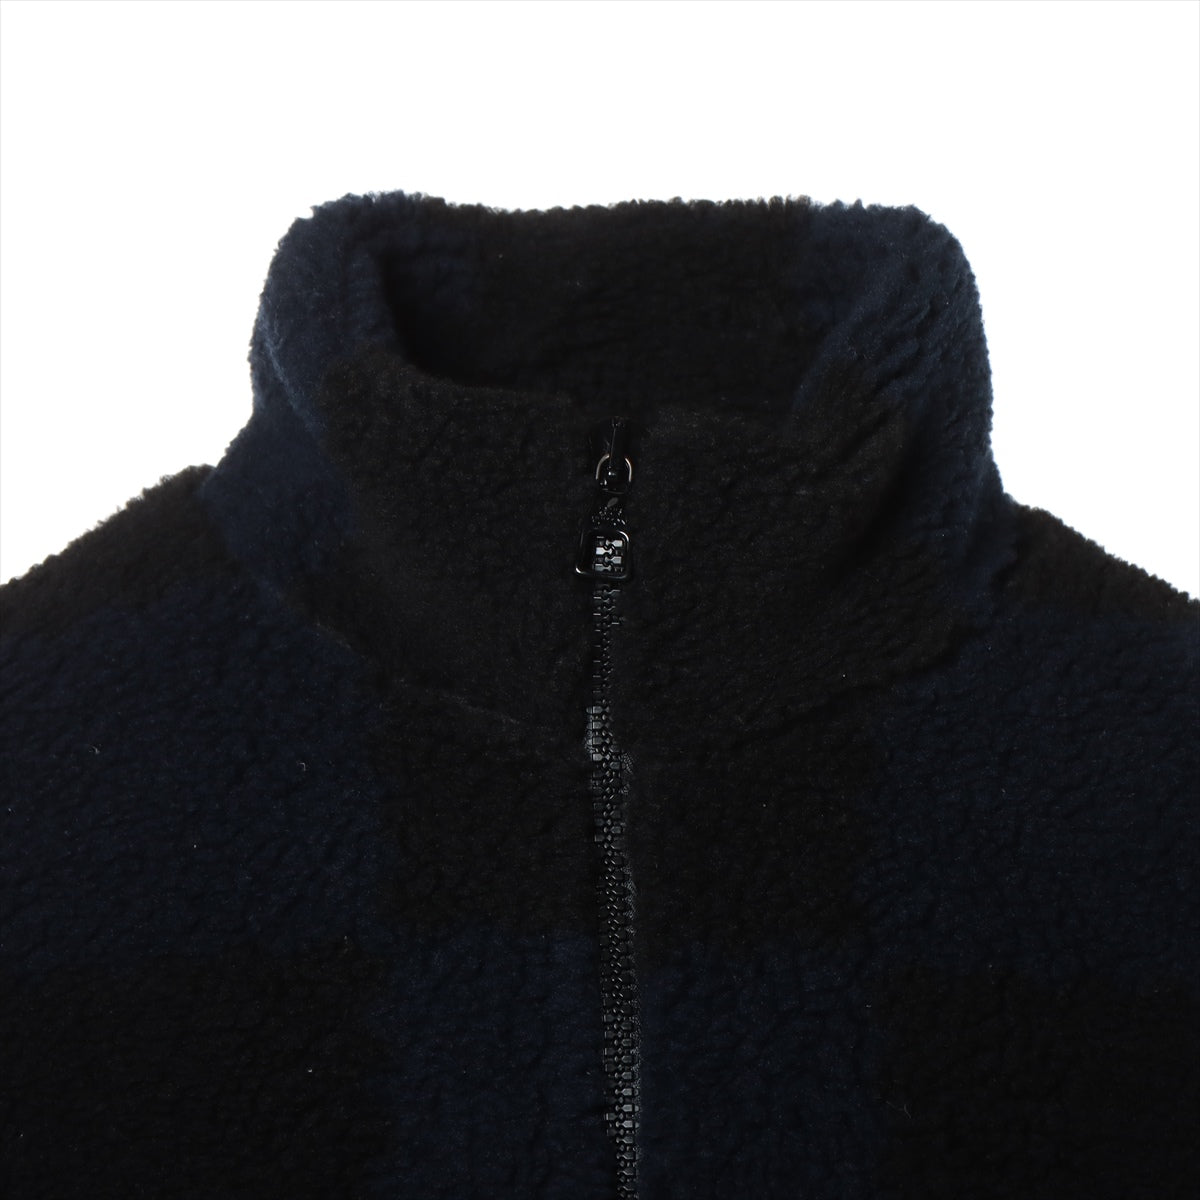 Louis Vuitton x NIGO 22SS Polyester Jacket XL Men's Black x Navy  jacquard damier fleece logo embroidery boa RM221M